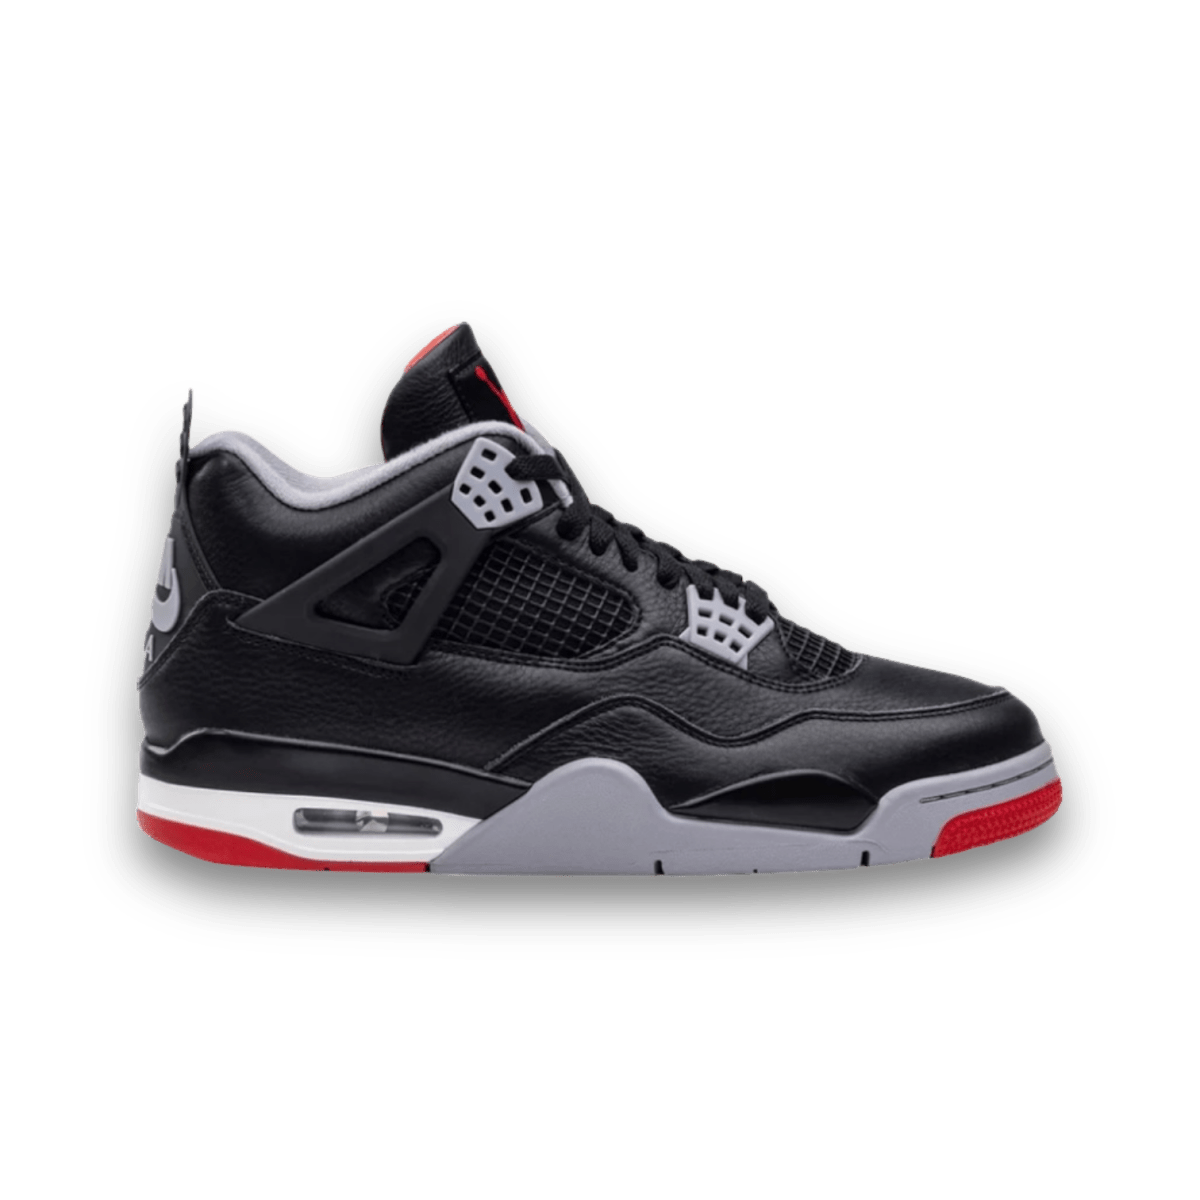 Air Jordan 4 Retro 'Bred Reimagined' - Grade School - Mid Sneaker - Jawns on Fire Sneakers & Streetwear